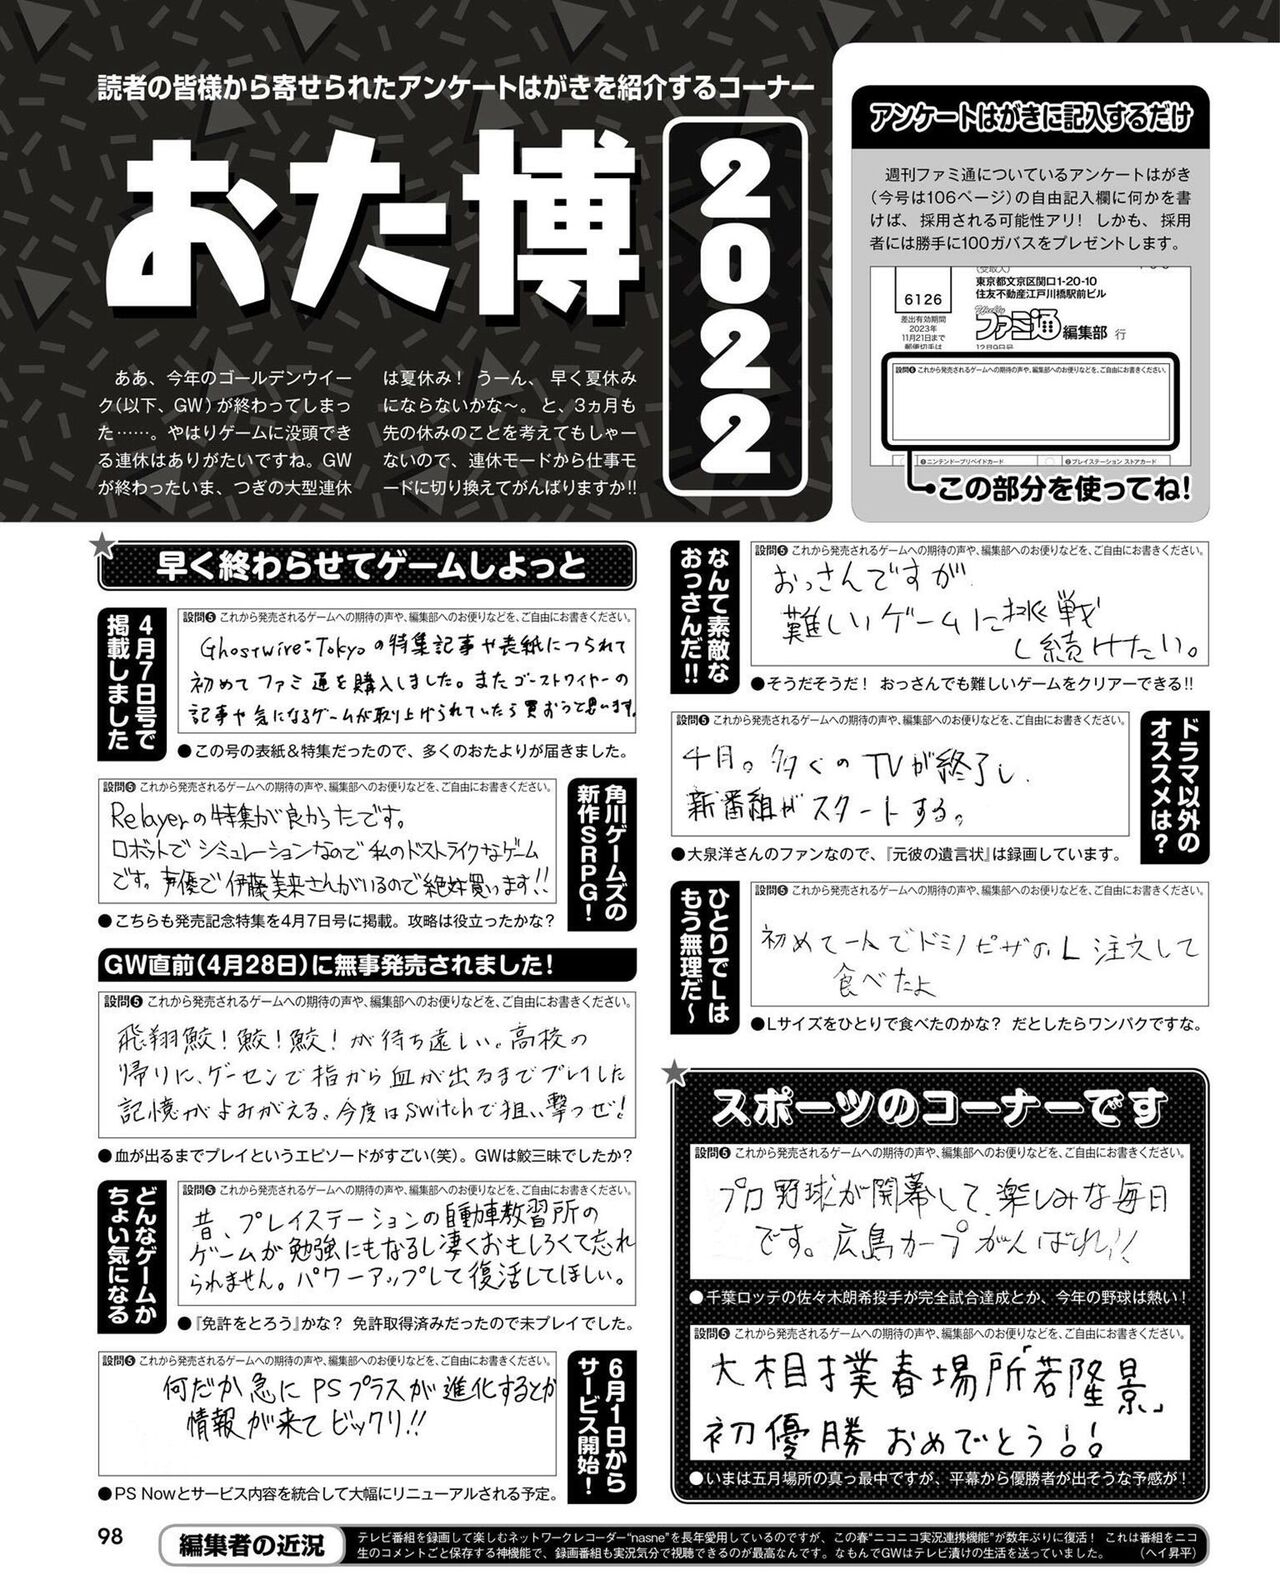 Weekly Famitsu 2022 6 2 97